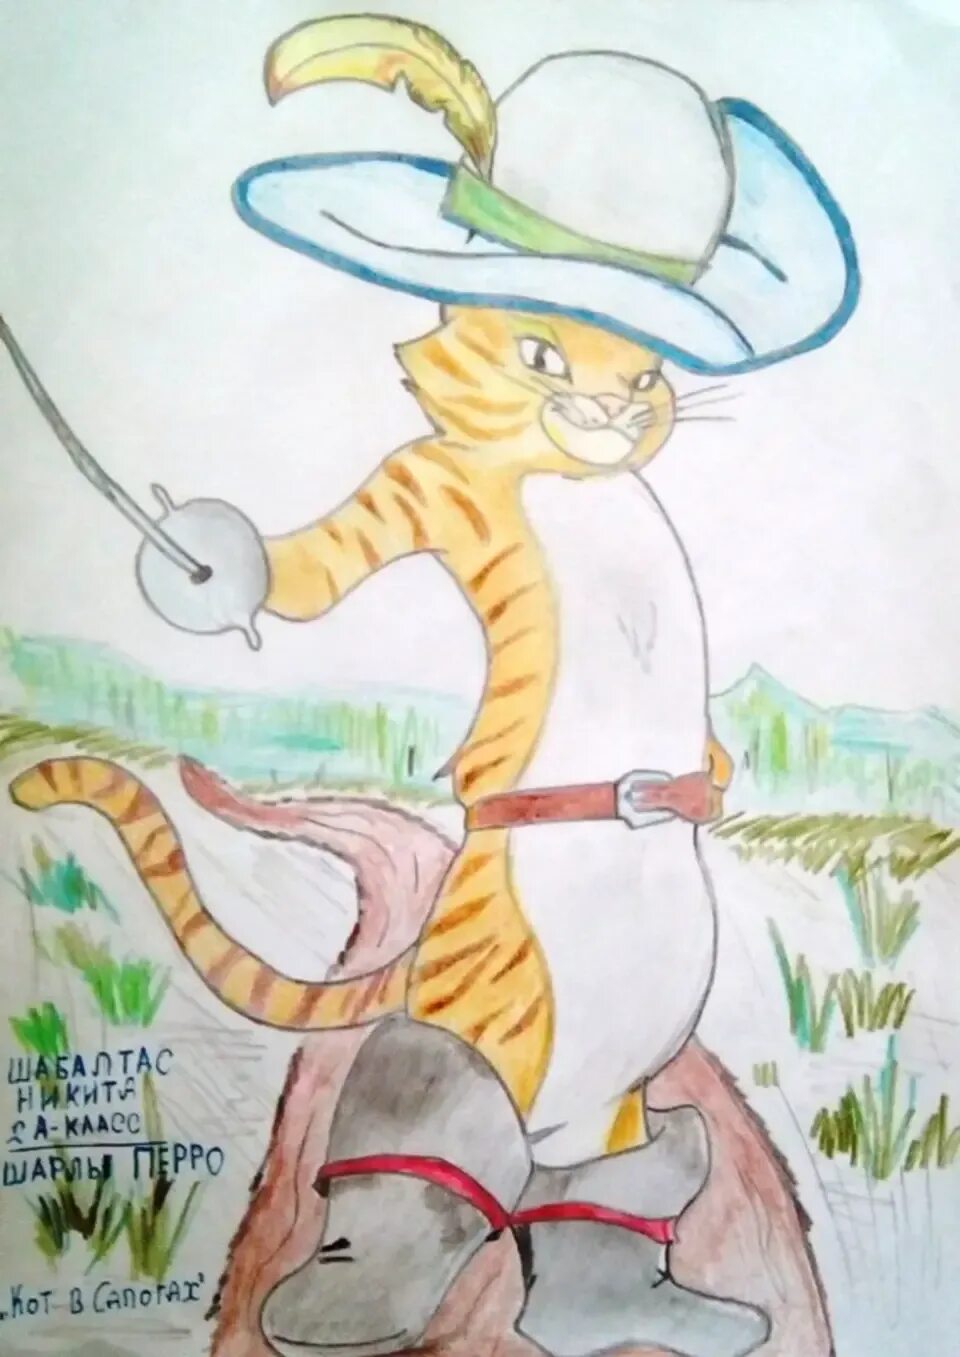 Кот в сапогахшарли перо. Иллюстрацию к сказке ш.Перро "кот в сапогах".